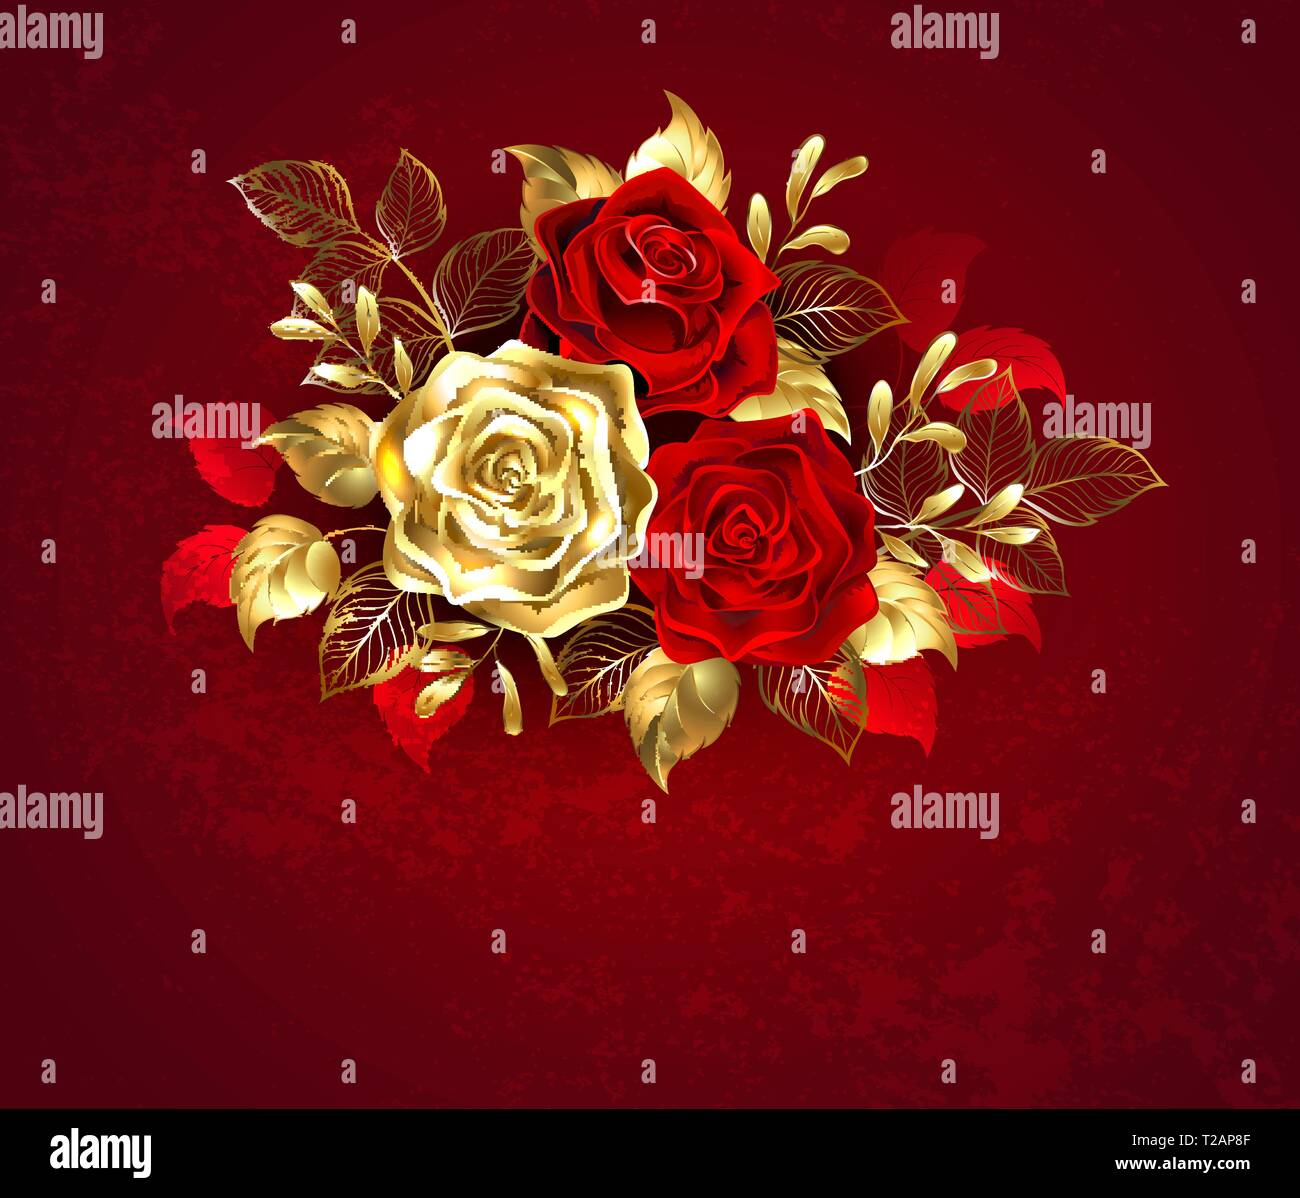 Die Zusammensetzung der beiden kunstvoll bemalten rote Rosen und eine goldene Rose, mit Gold verziert, Jewel Blätter auf strukturierten Hintergrund. Stock Vektor